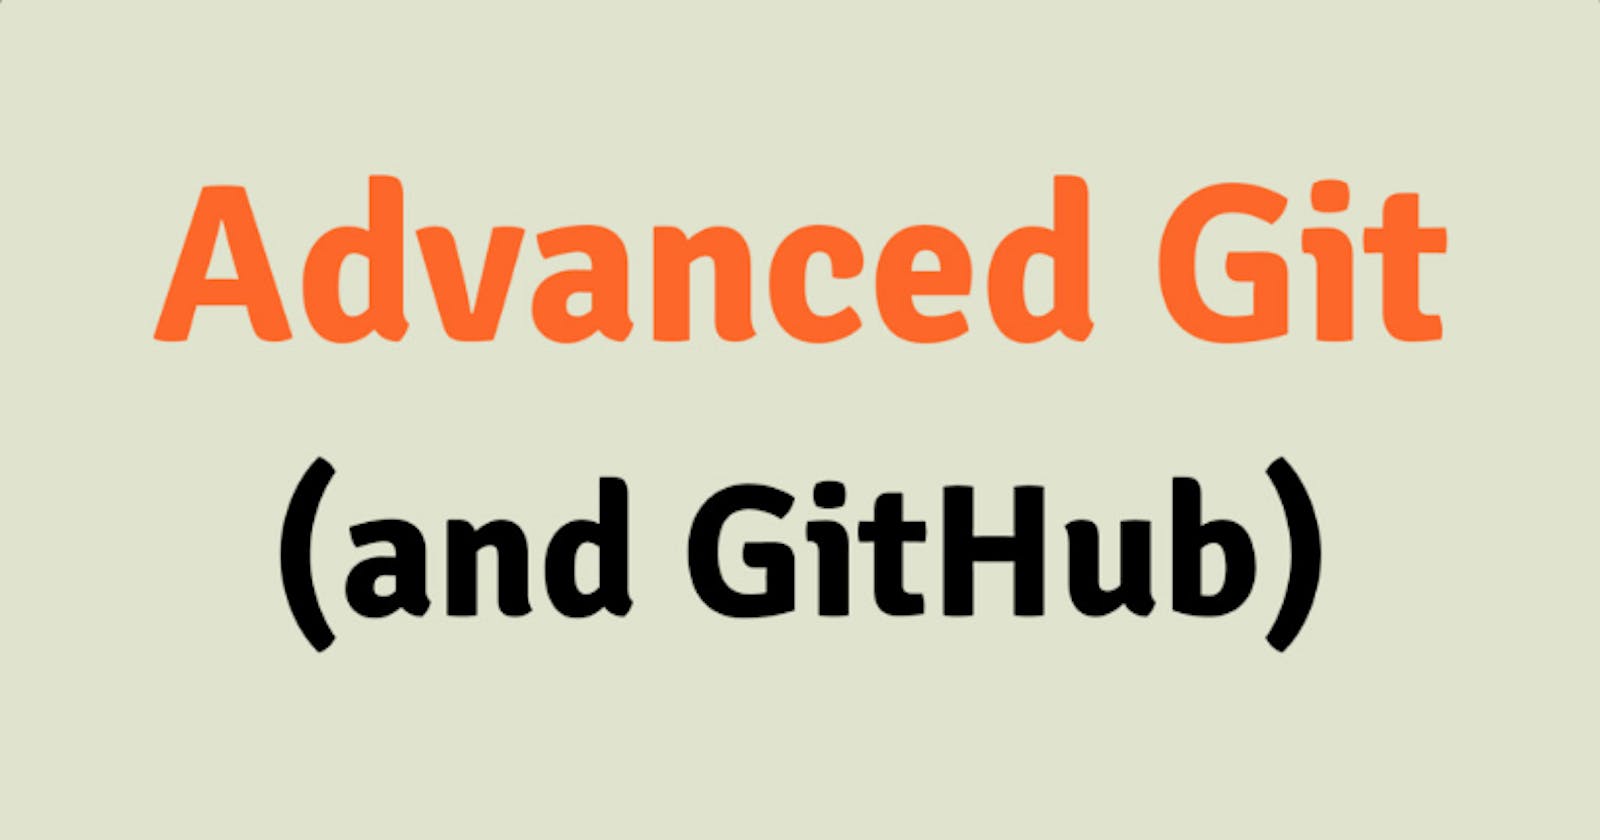 Advance Git & GitHub for DevOps Engineers Part-2